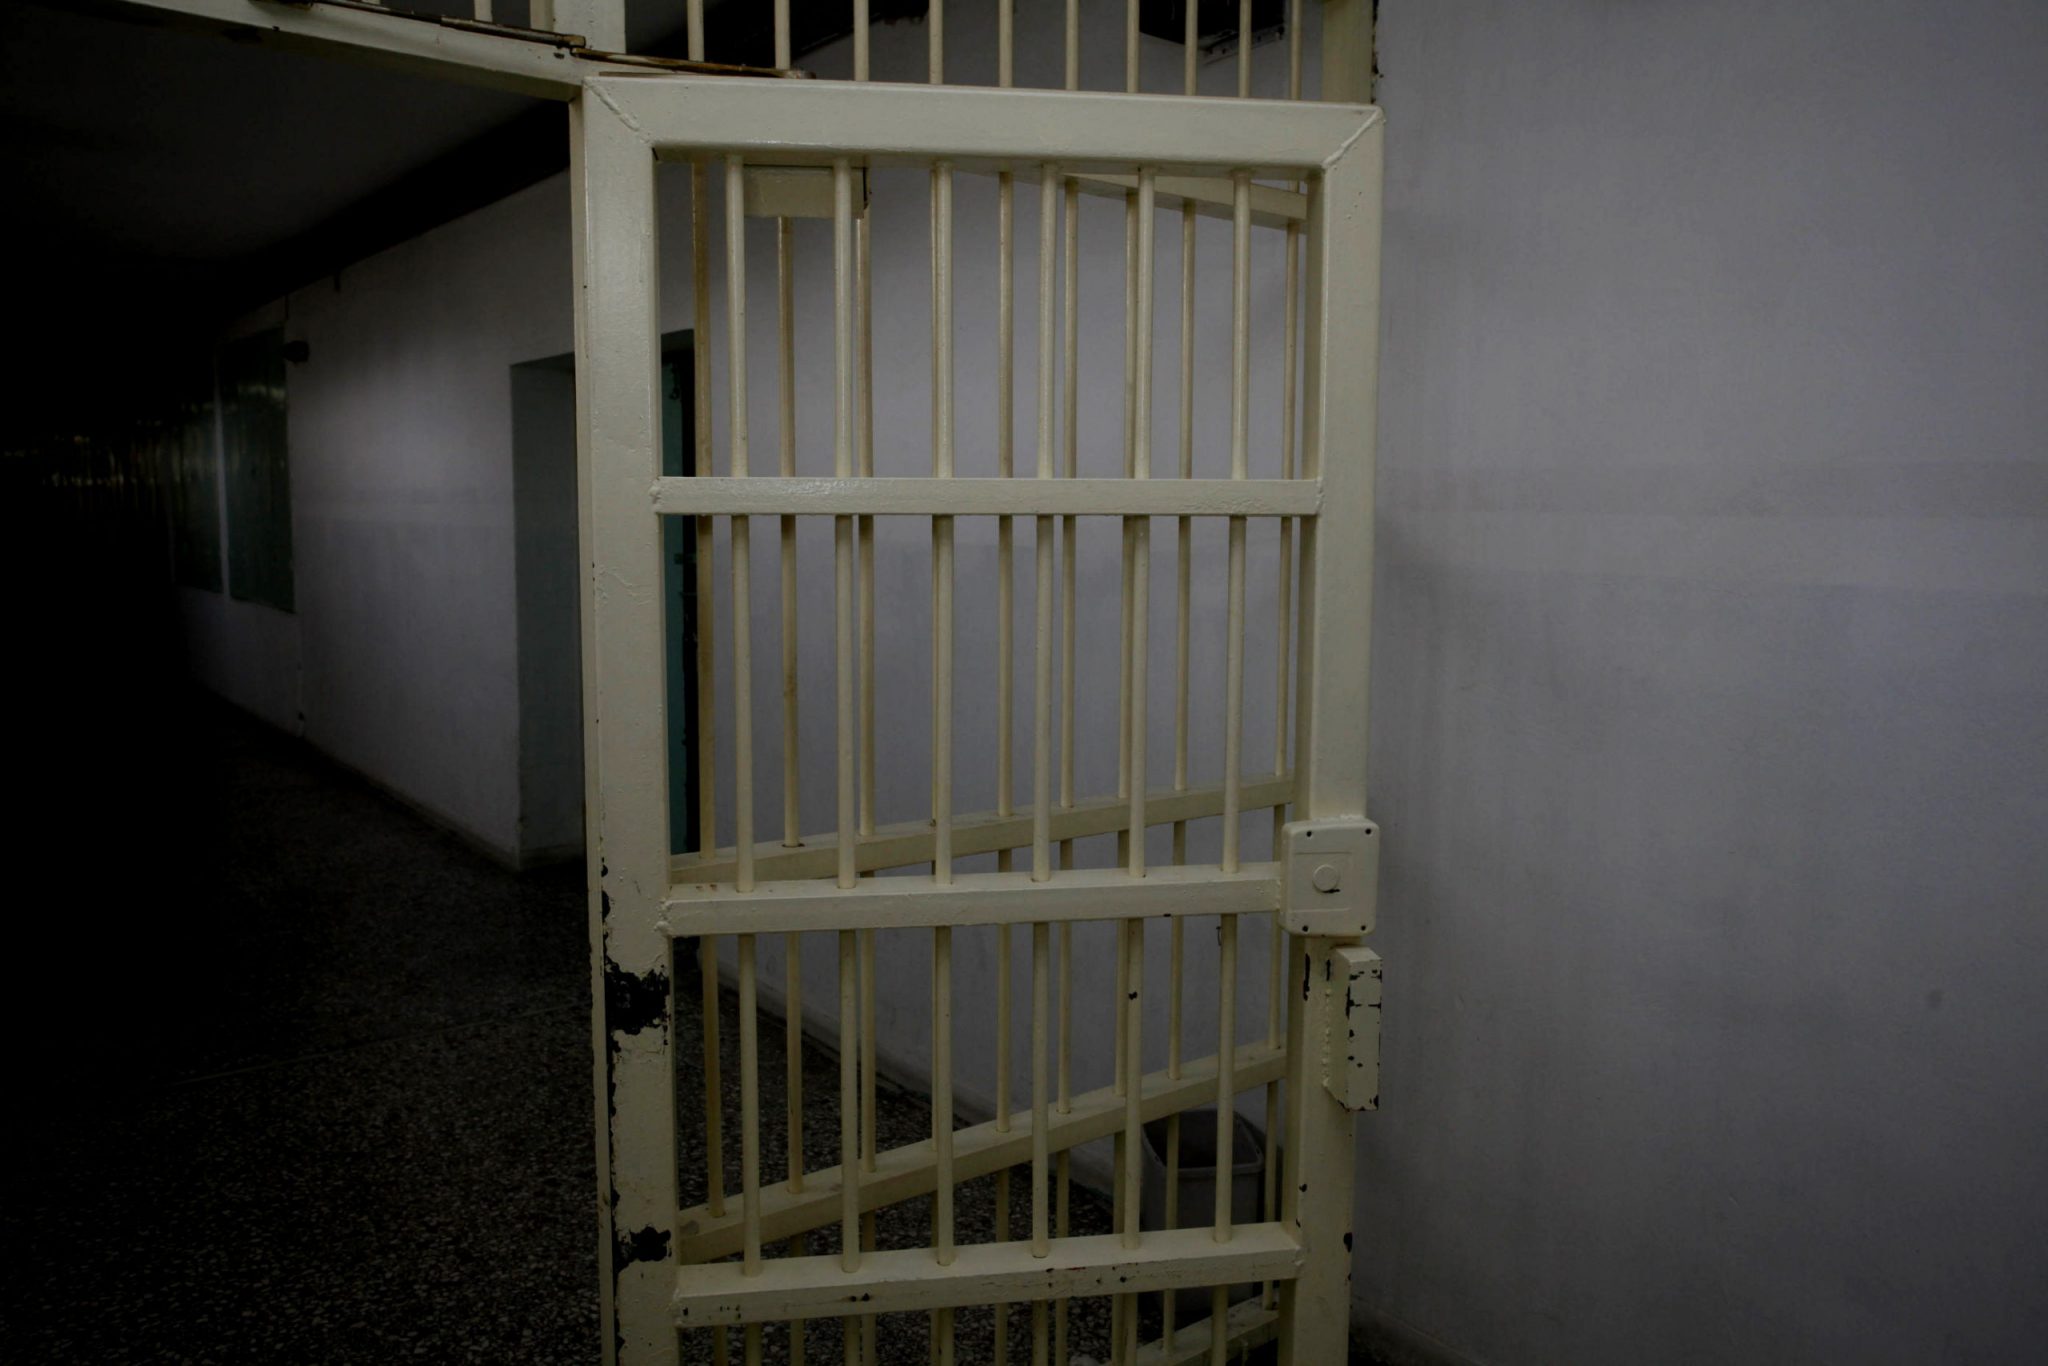 Σοκ: Ζευγάρι «βασάνιζε διαρκώς» 10χρονο – Αντιμέτωποι με θανατική ποινή